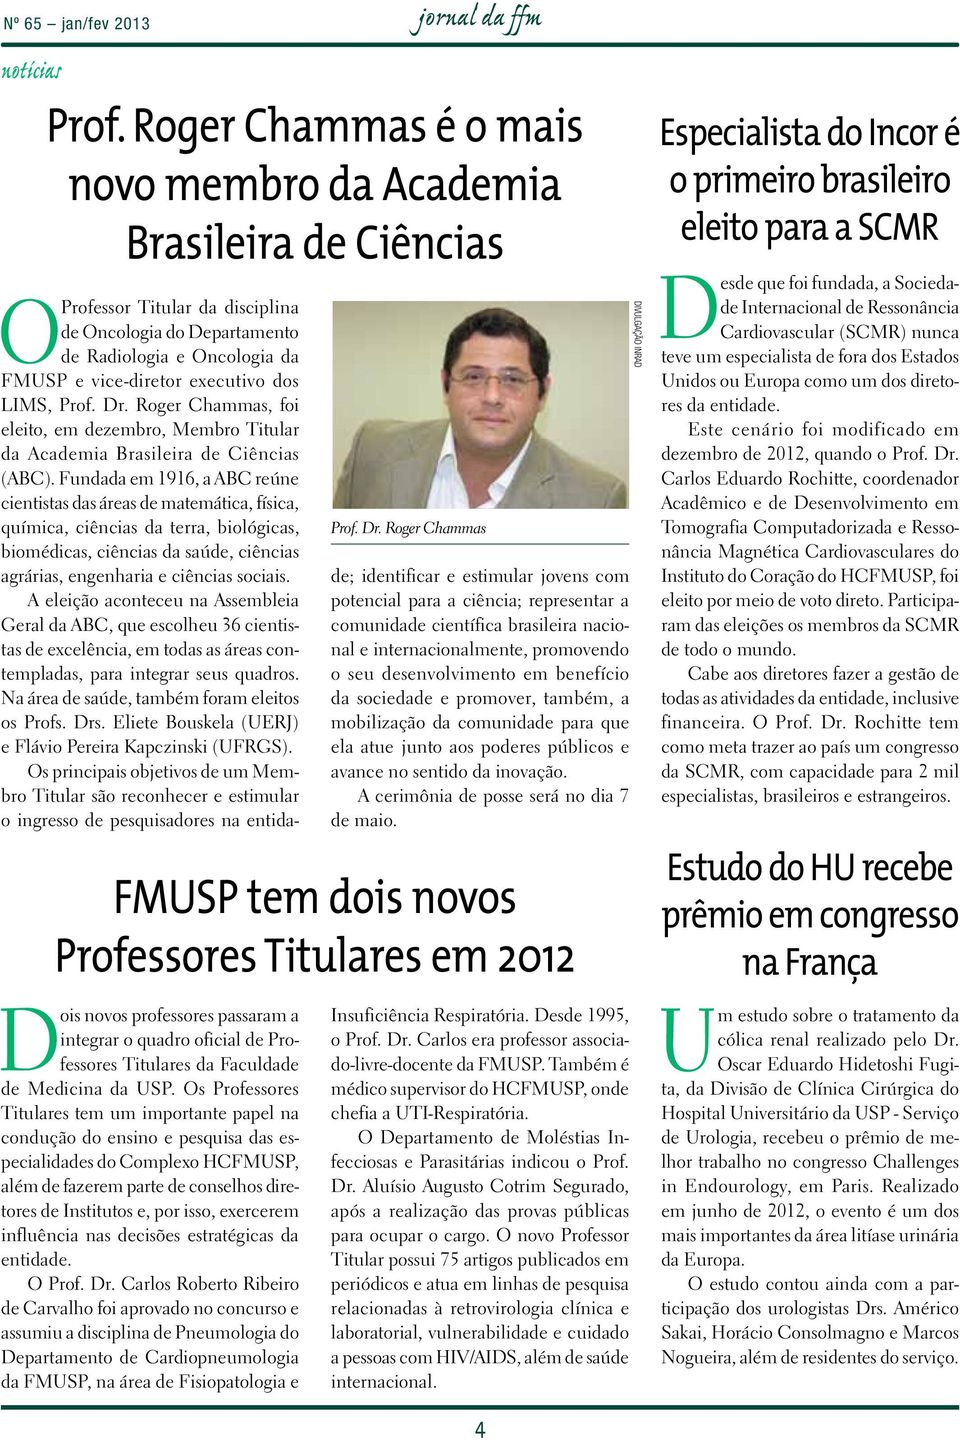 Roger Chammas, foi eleito, em dezembro, Membro Titular da Academia Brasileira de Ciências (ABC).